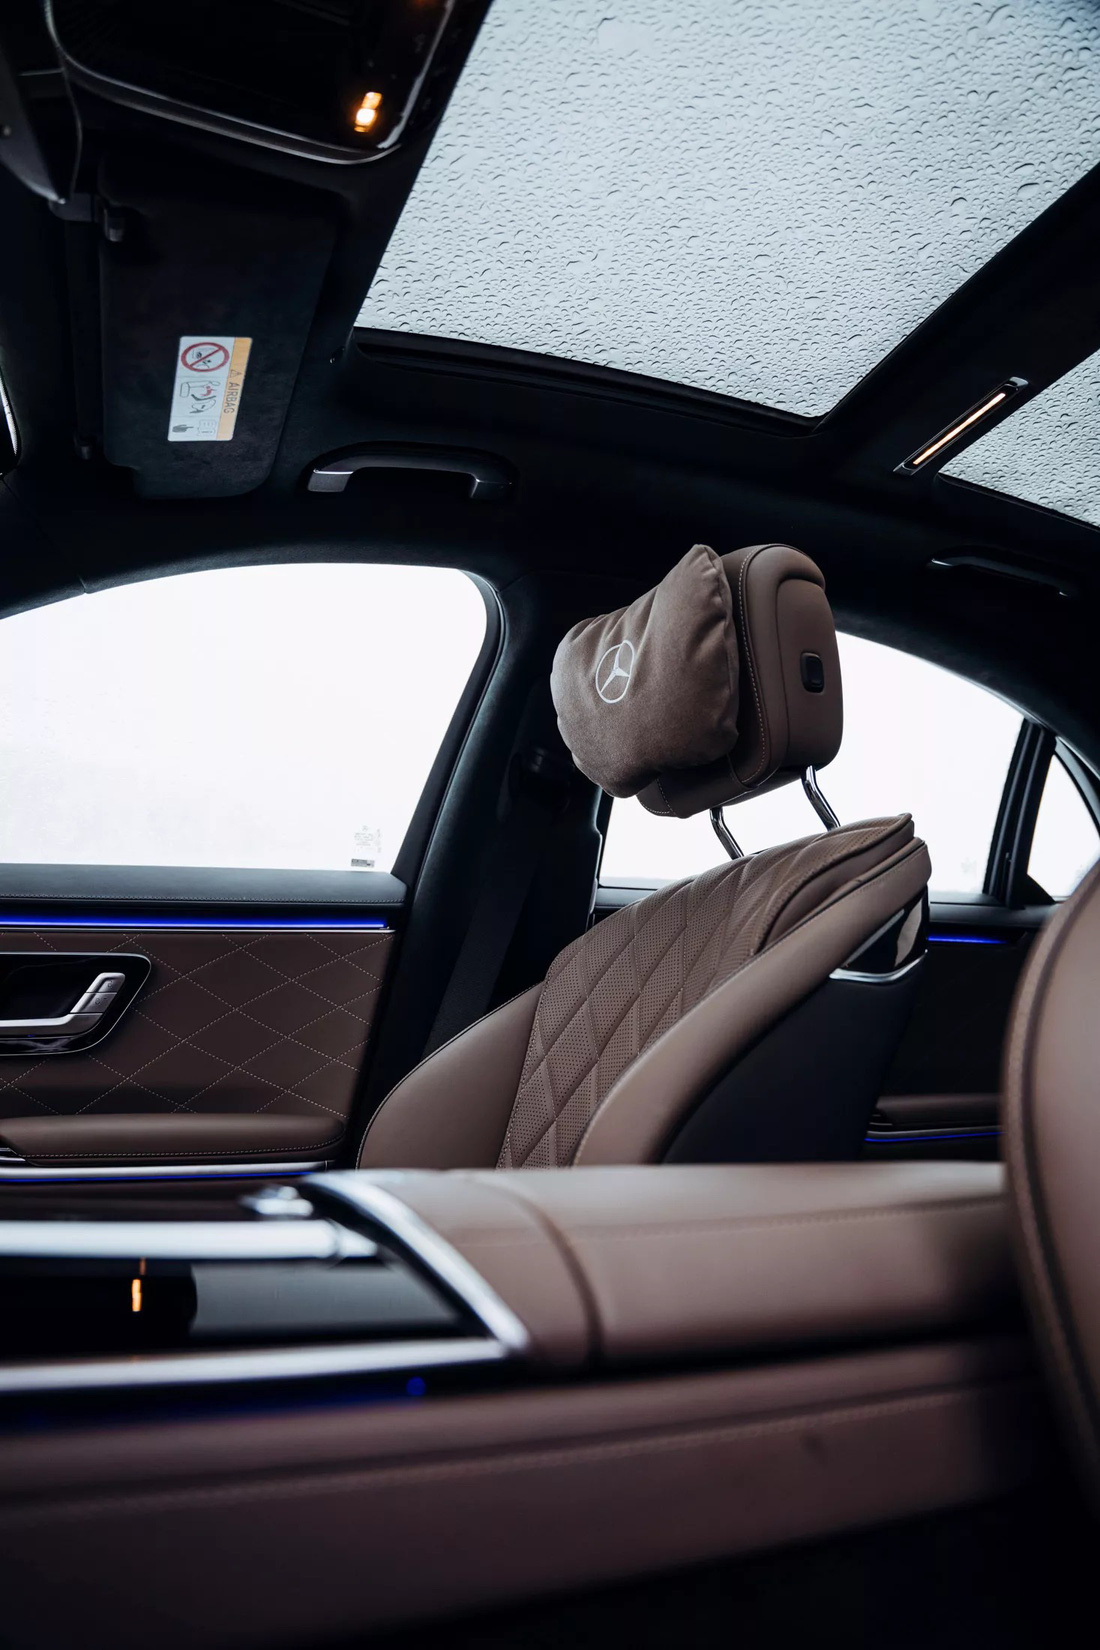 Khi xe tắt máy, điểm khác duy nhất bên trong cabin quan sát được cũng chỉ có tựa đầu mới - Ảnh: Mercedes-Benz